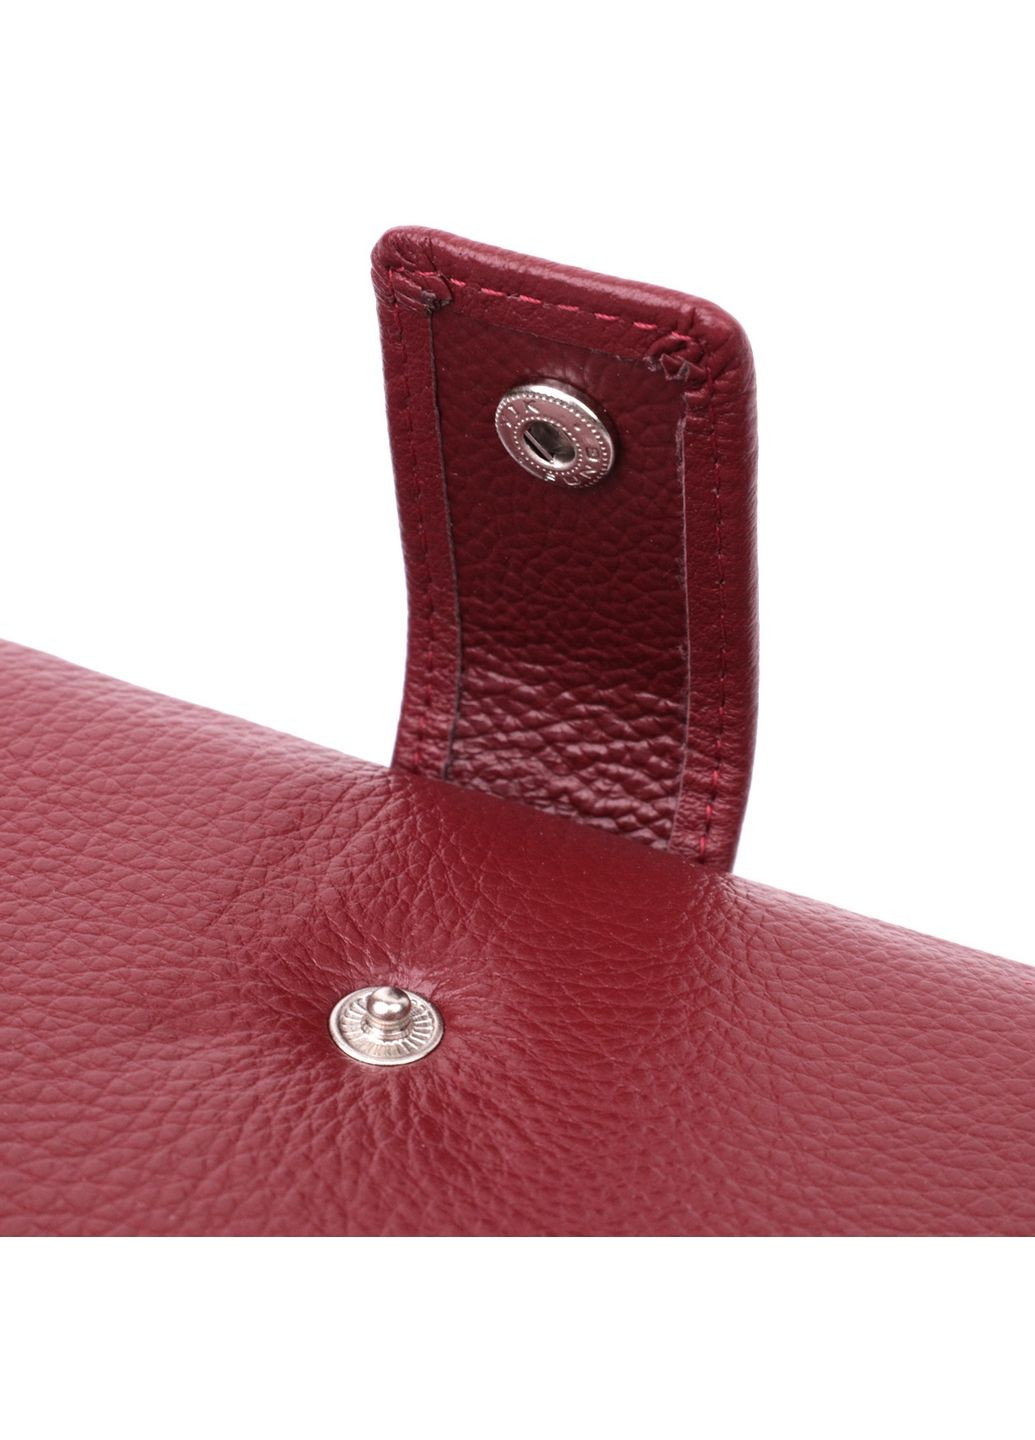 Жіночий шкіряний гаманець st leather (288188743)